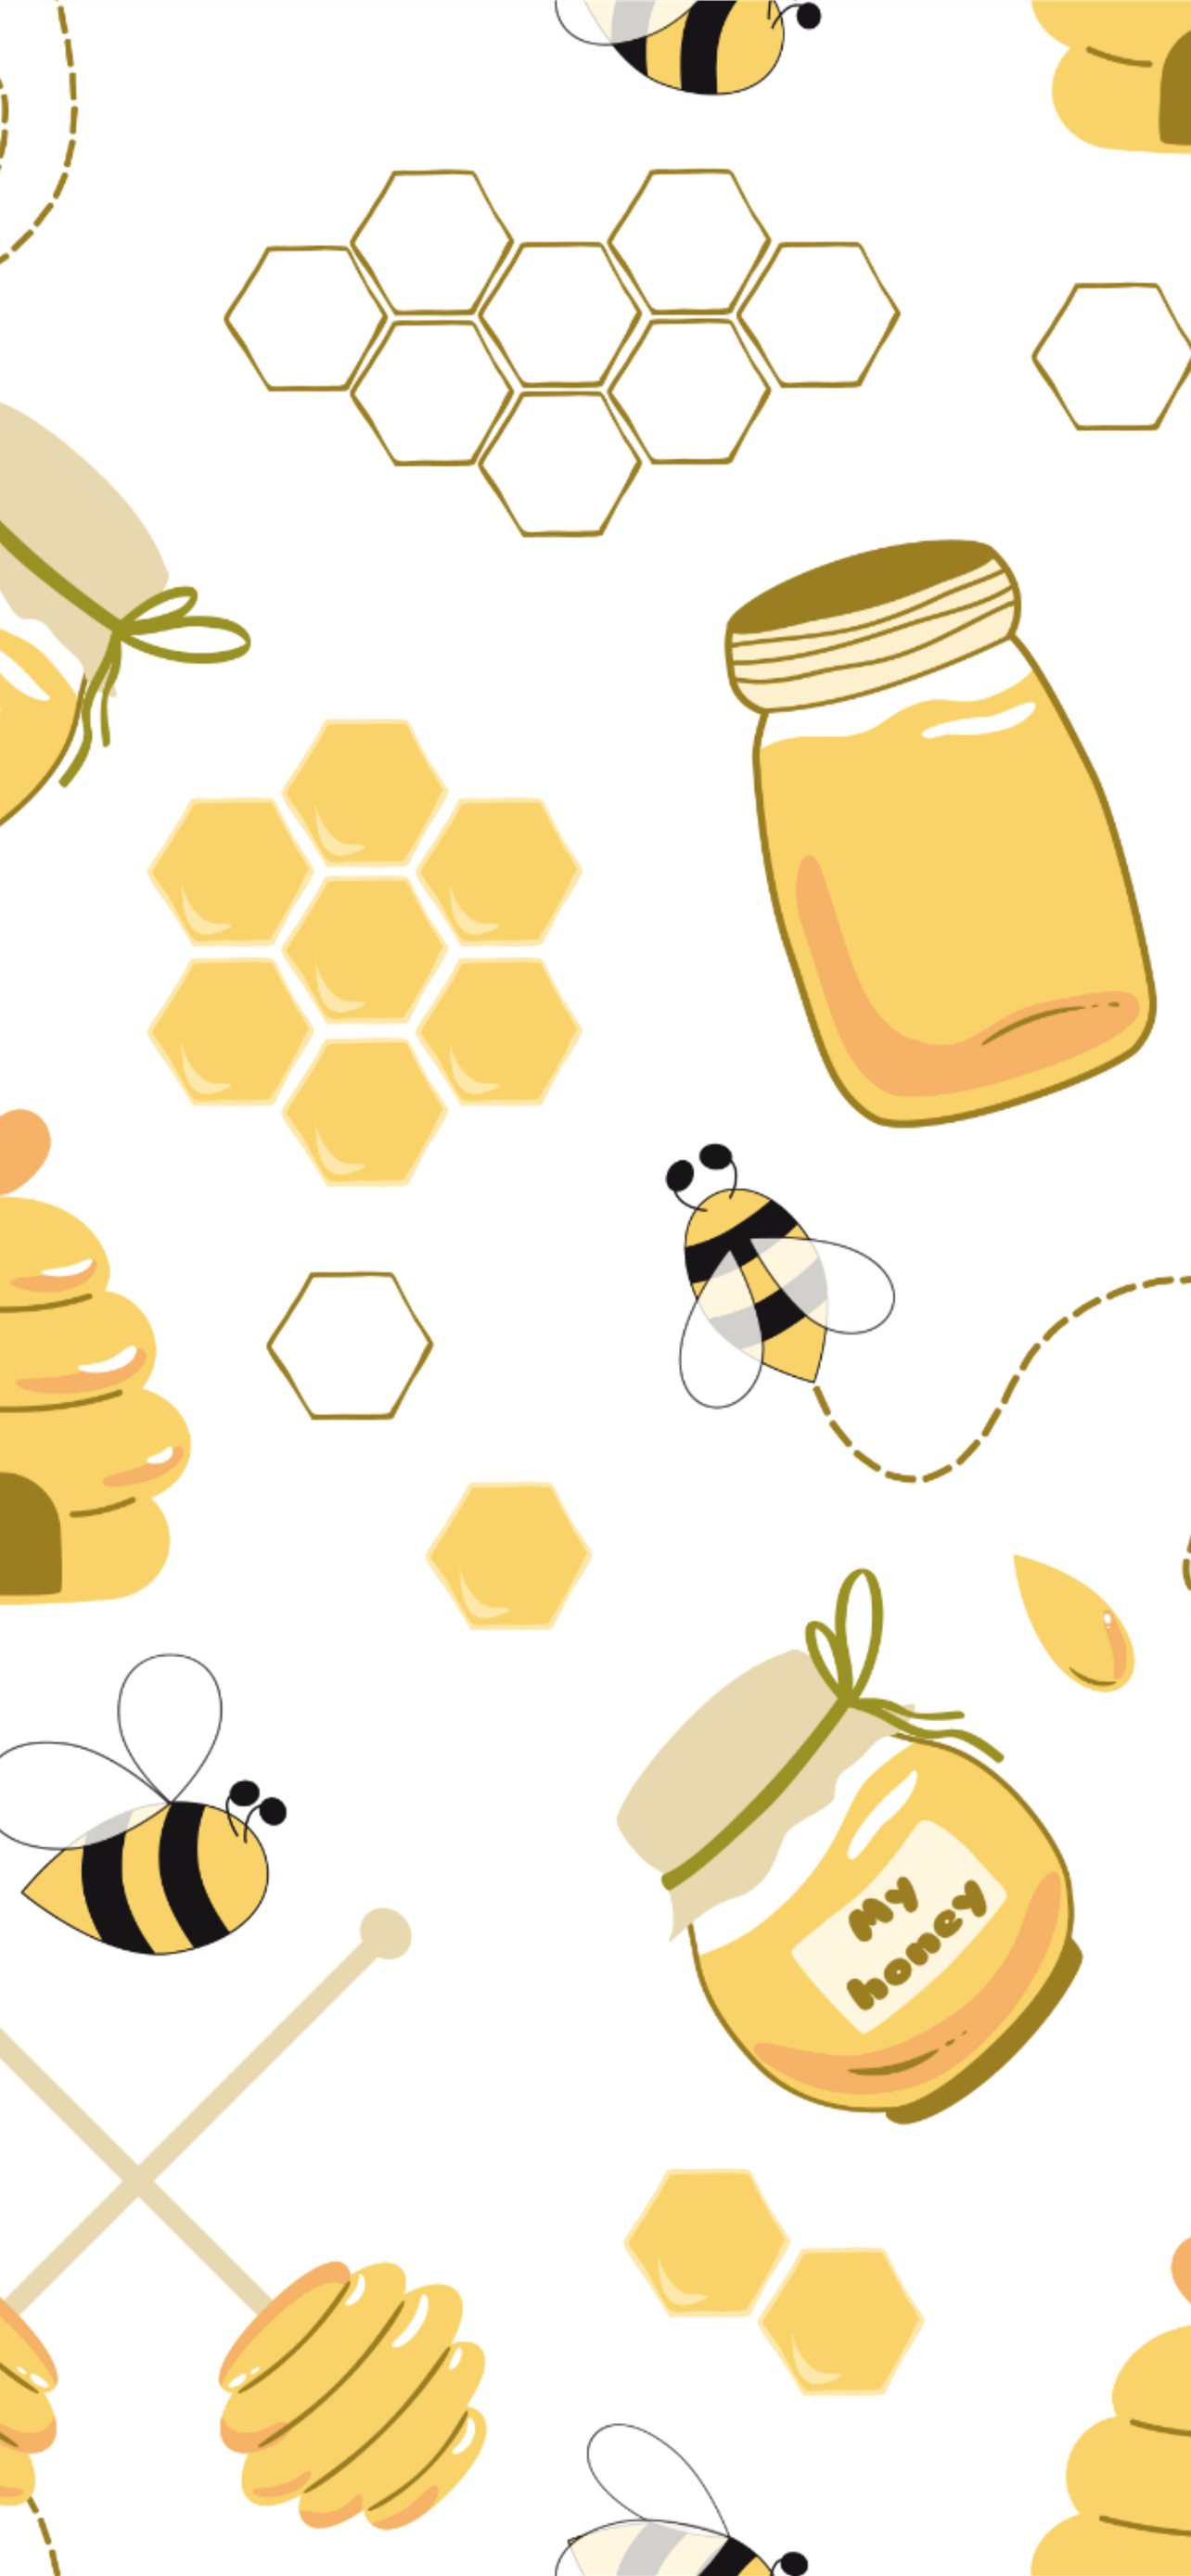 Bee Wallpapers